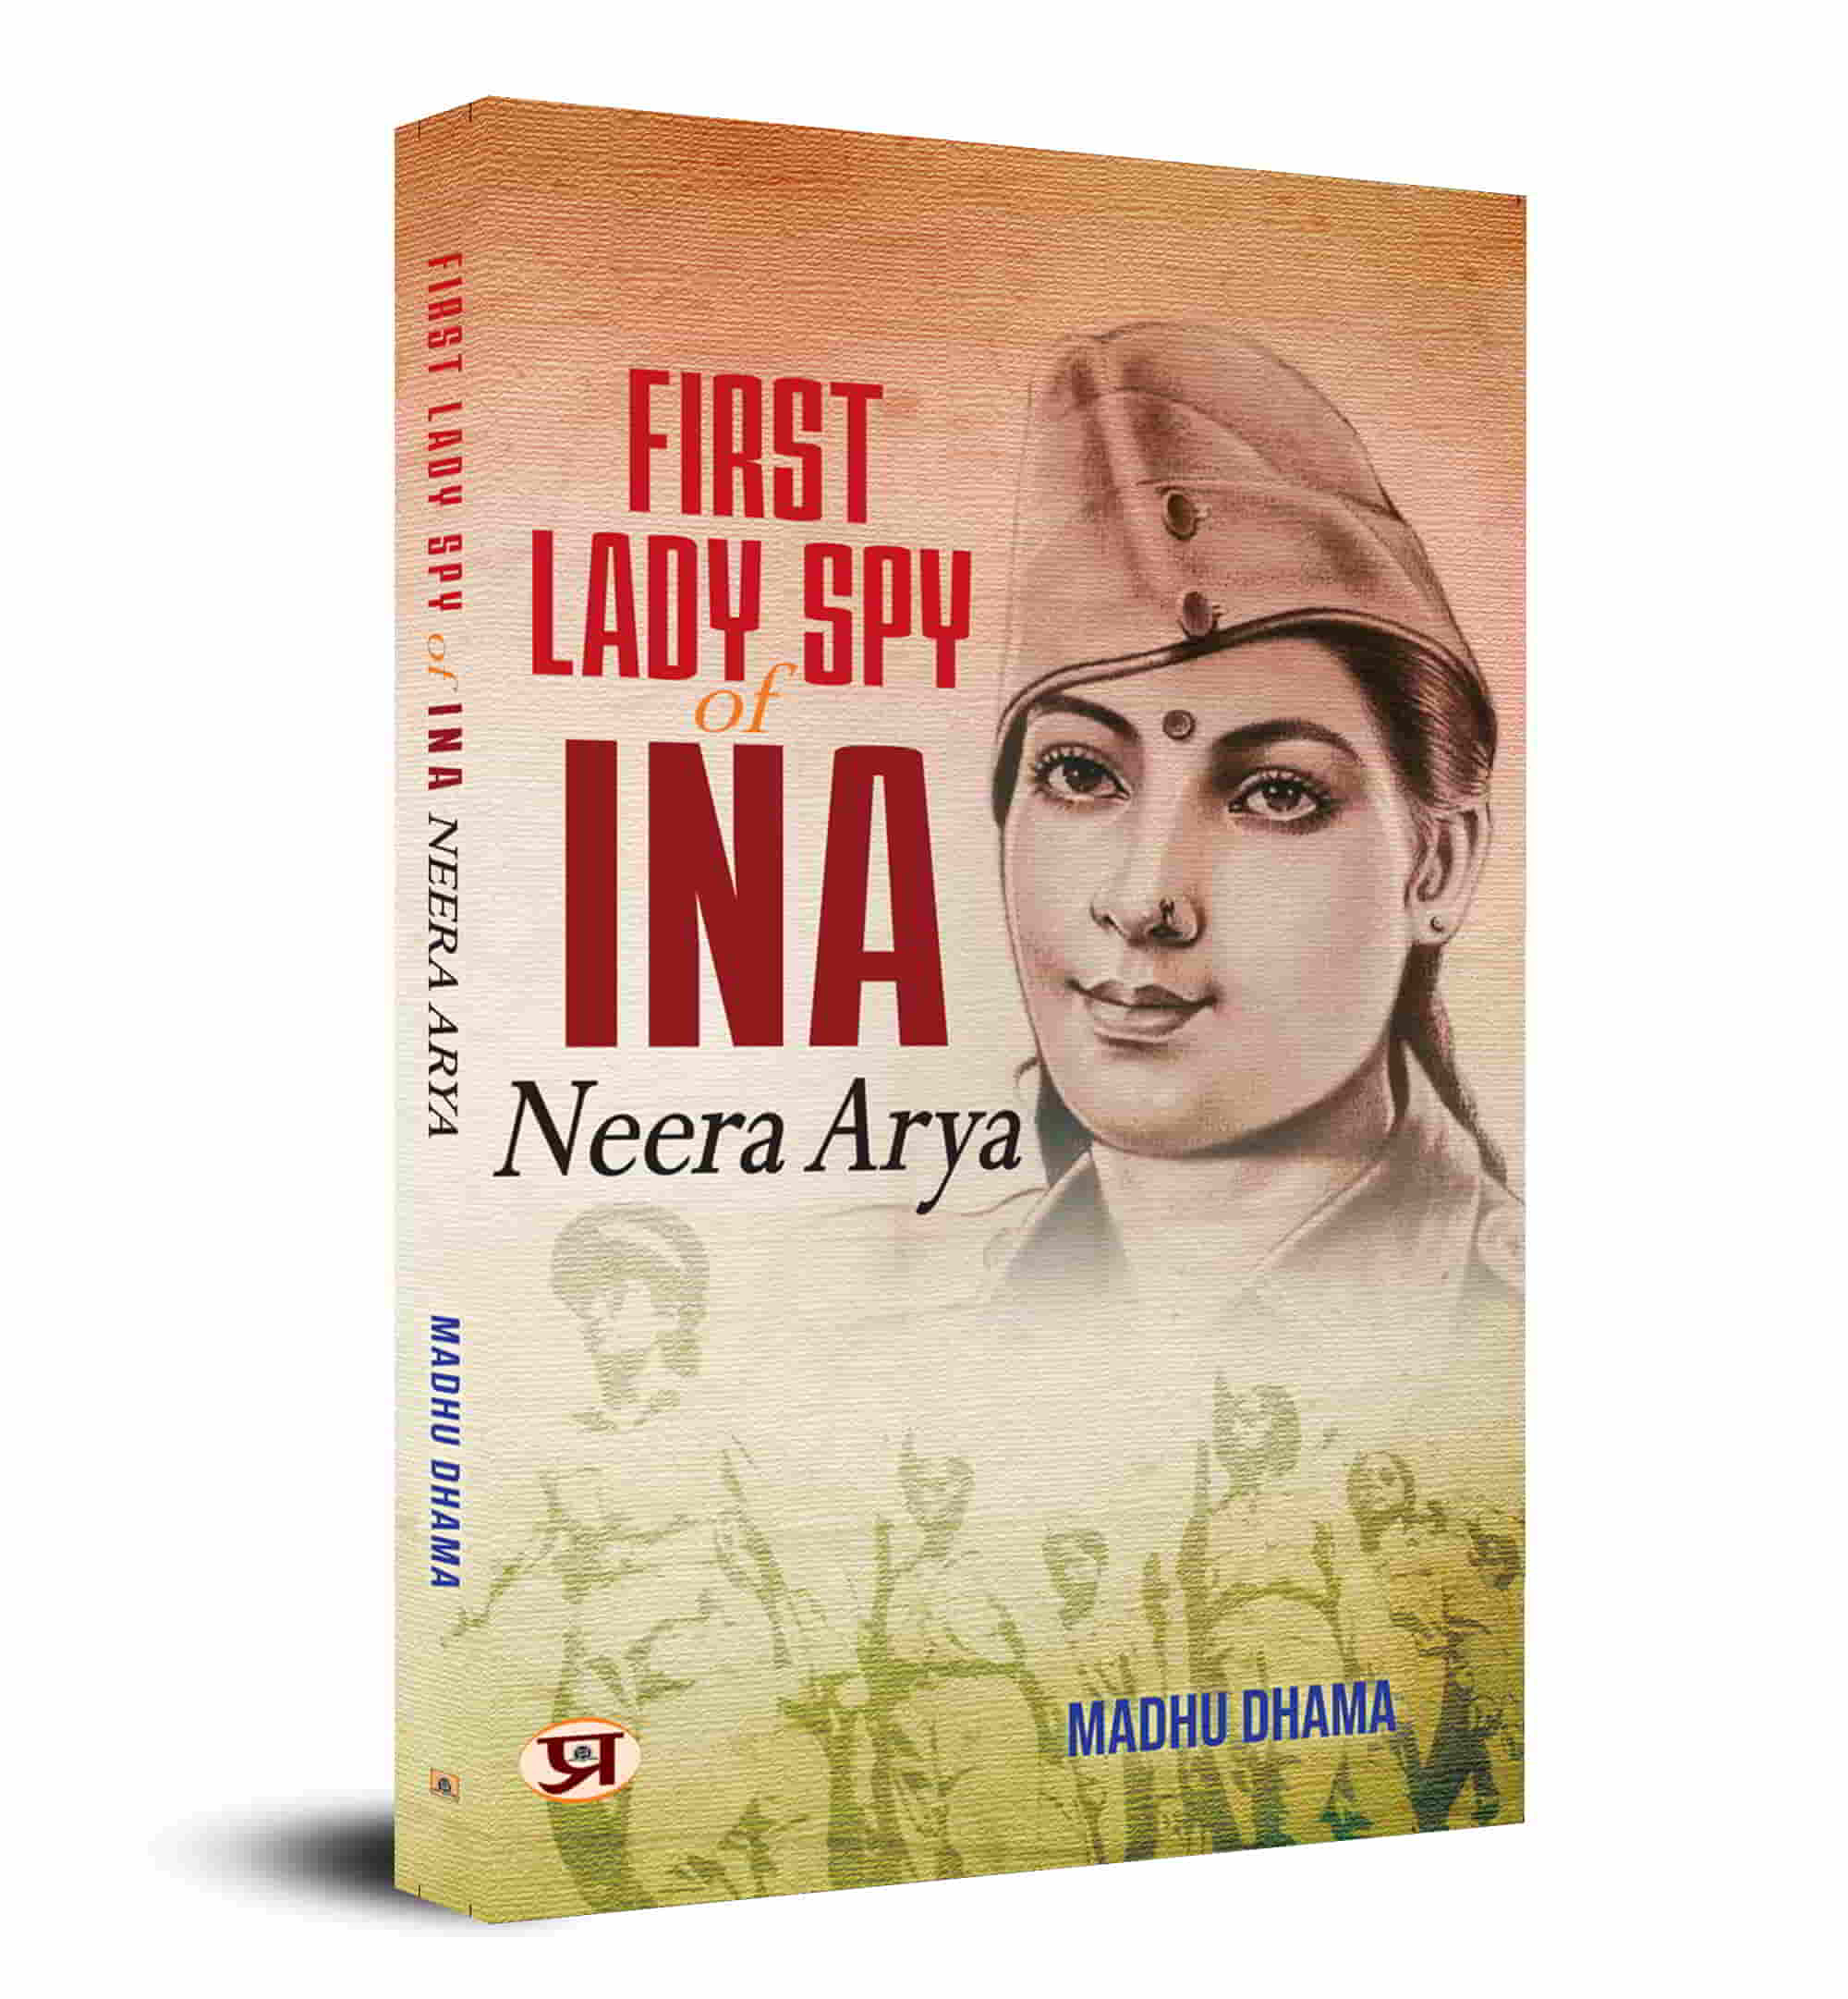 First Lady Spy of INA: Neera Arya